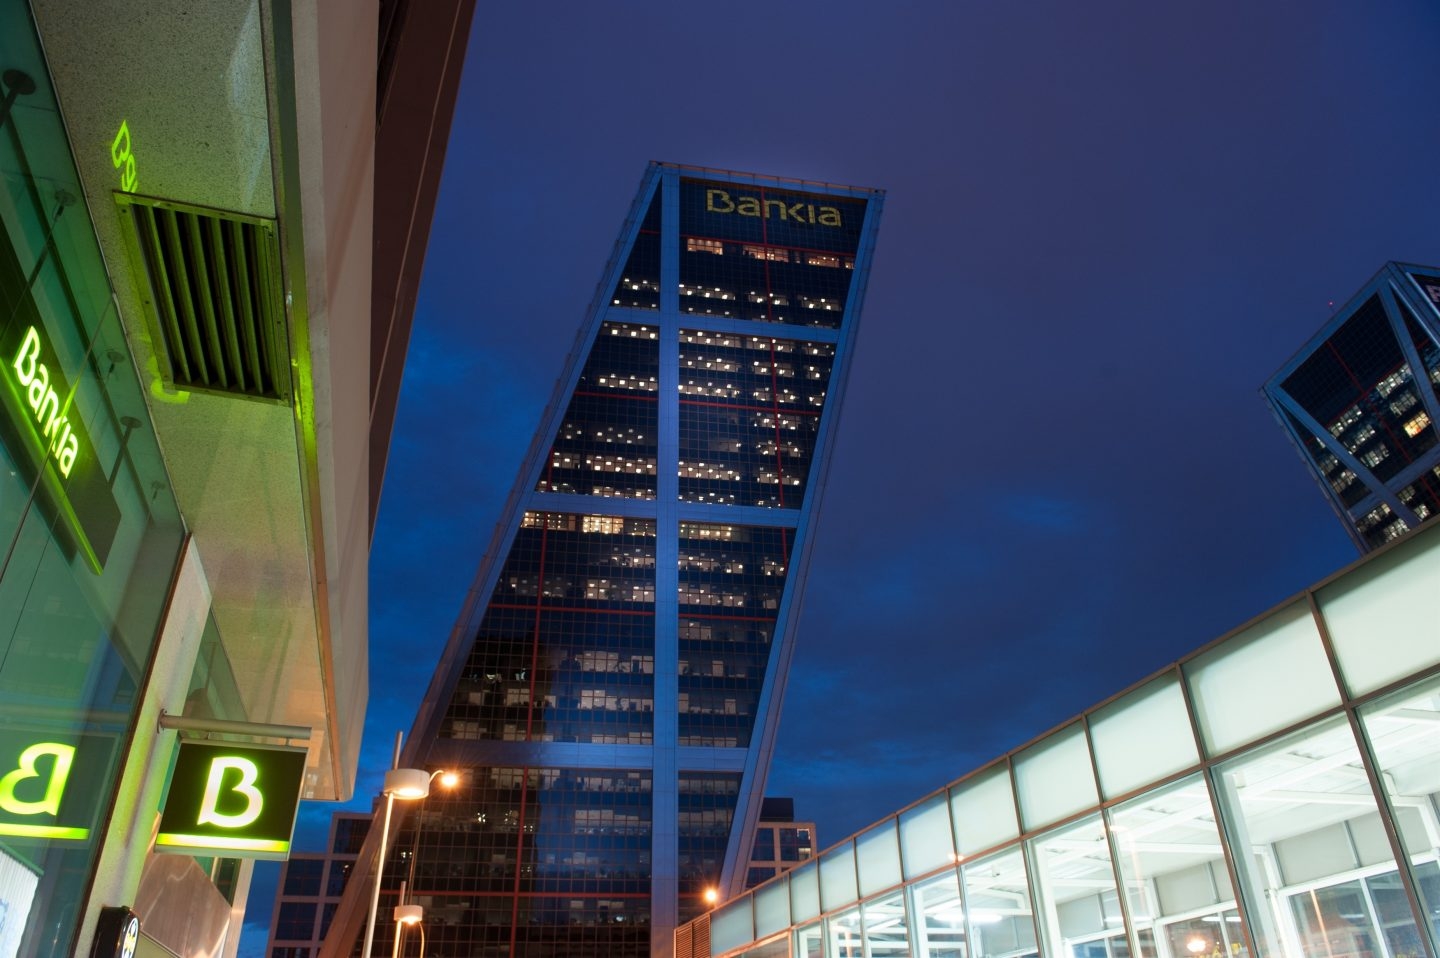 La caída de Bankia en bolsa dificulta la reactivación de su privatización.